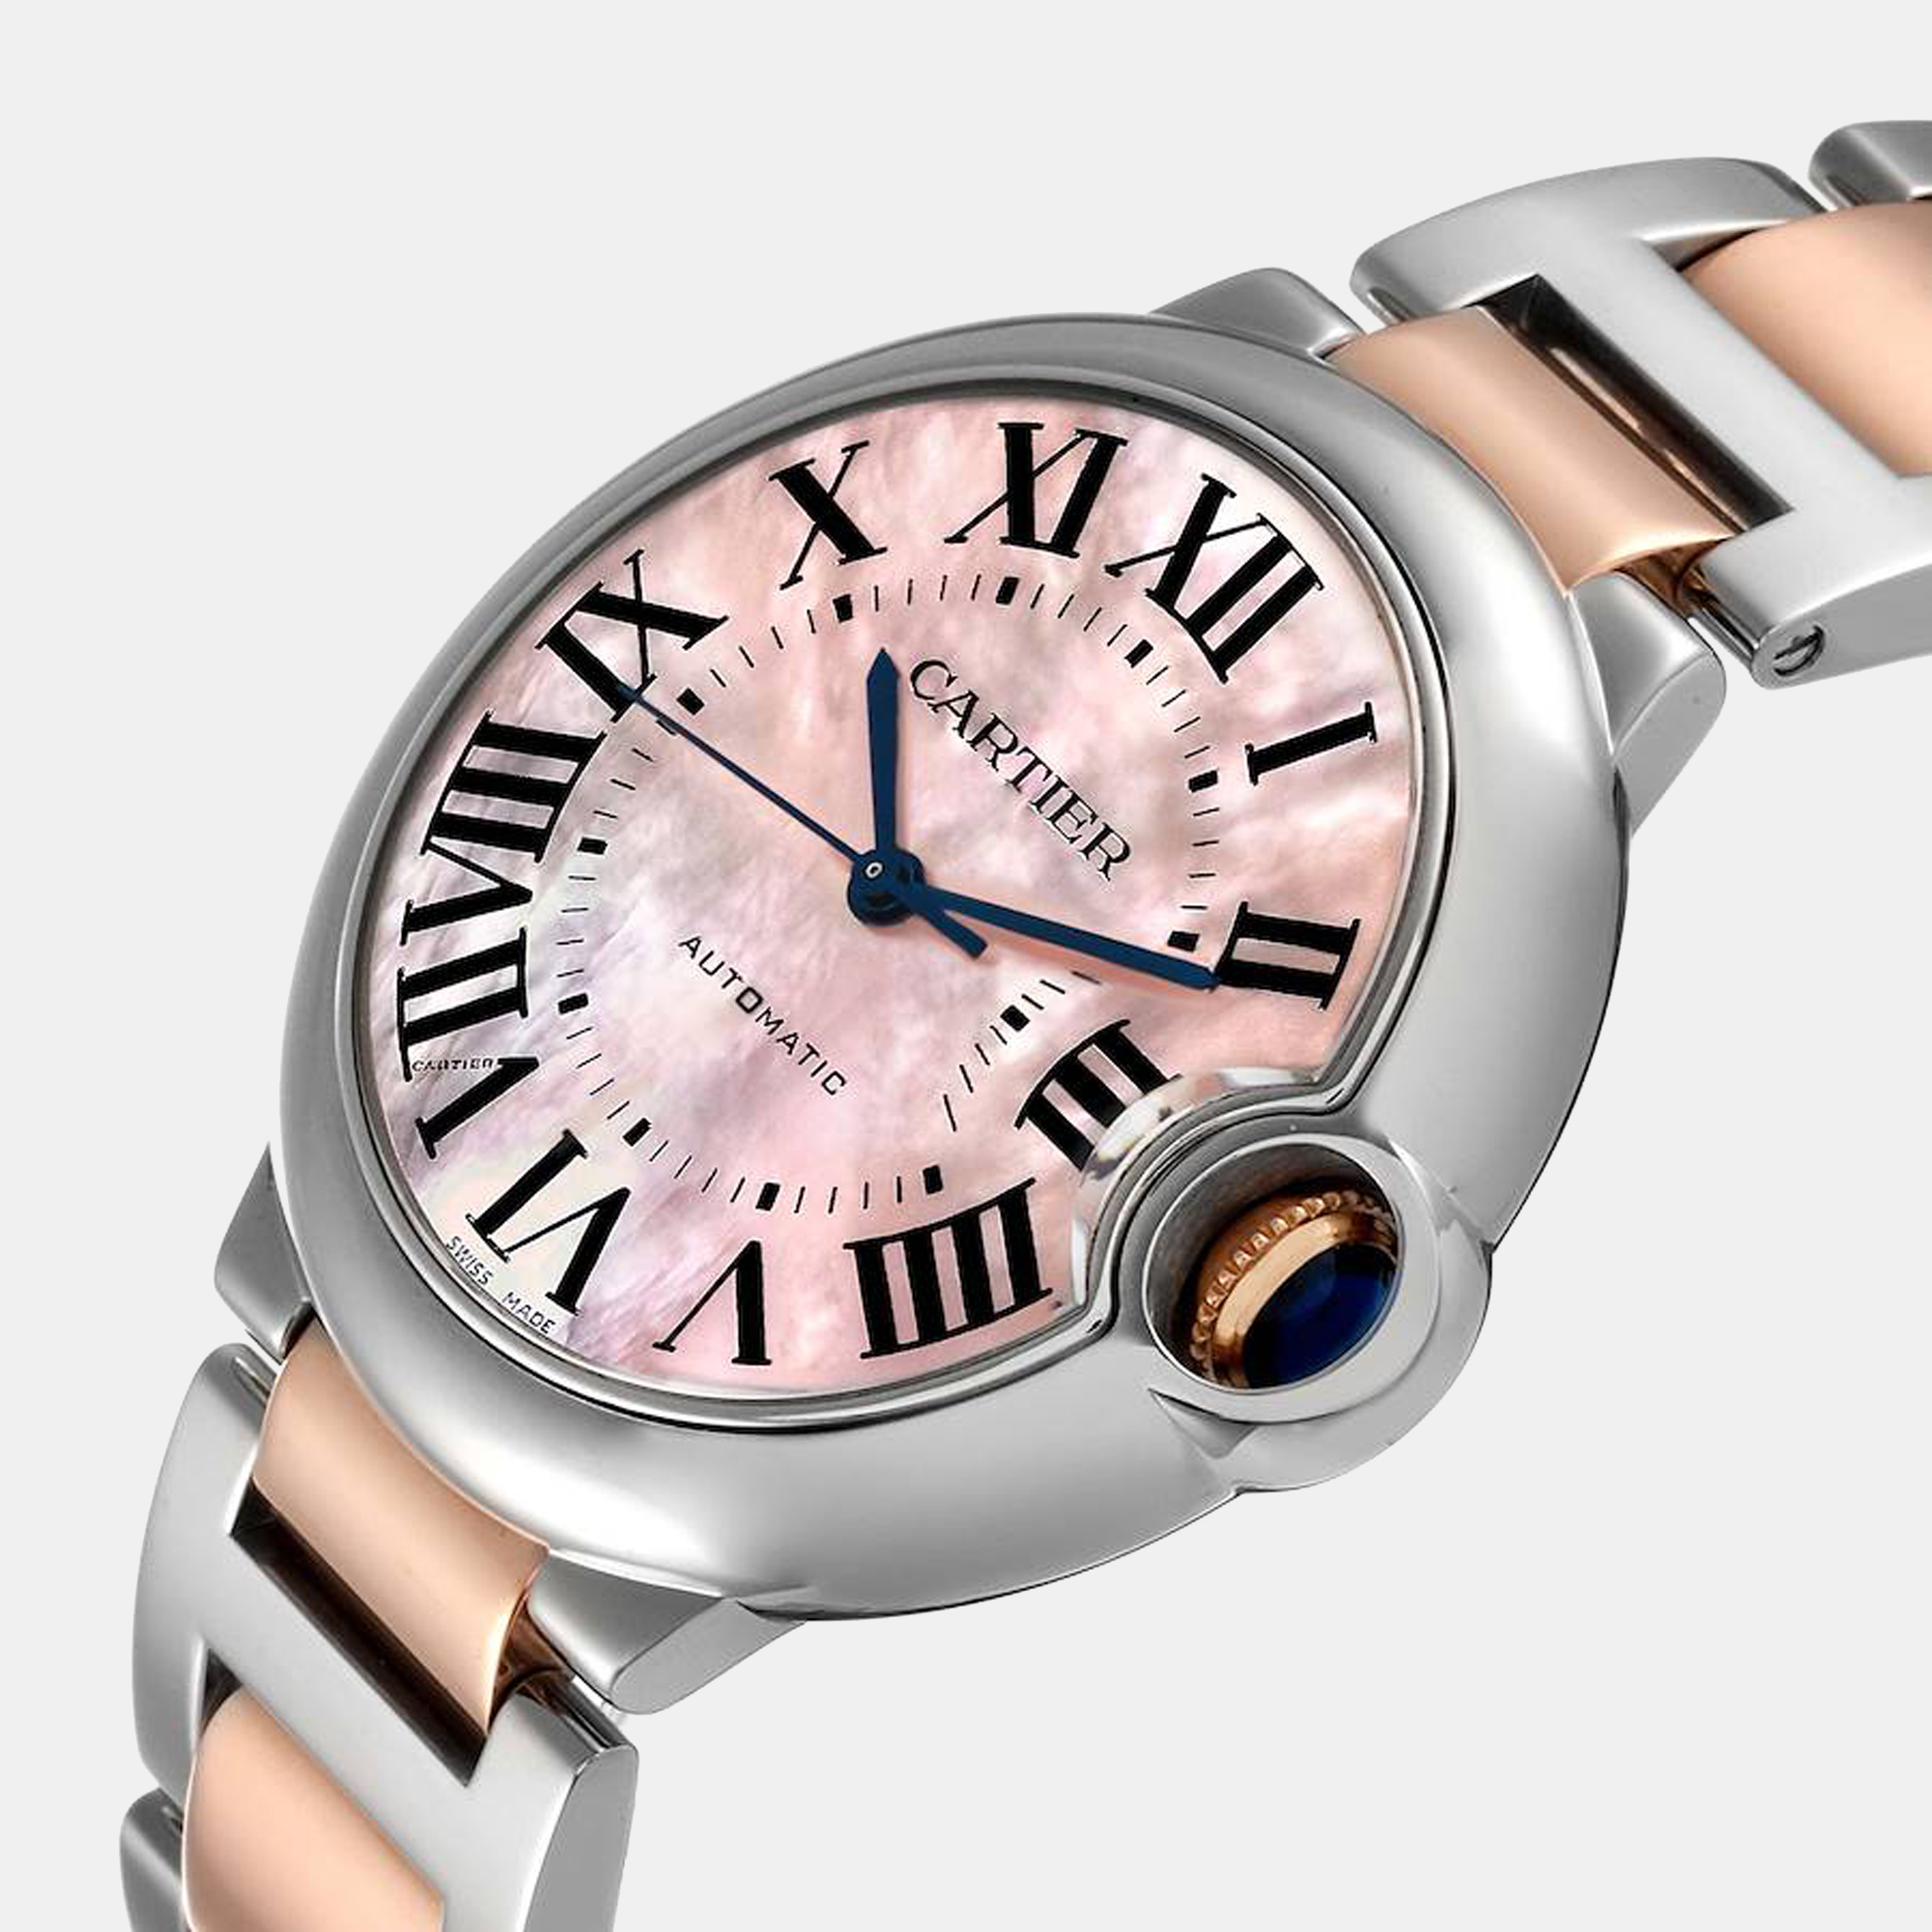 

Cartier MOP 18K Rose Gold And Stainless Steel Ballon Bleu W2BB0011 Automatic Women's Wristwatch 36 mm, Pink